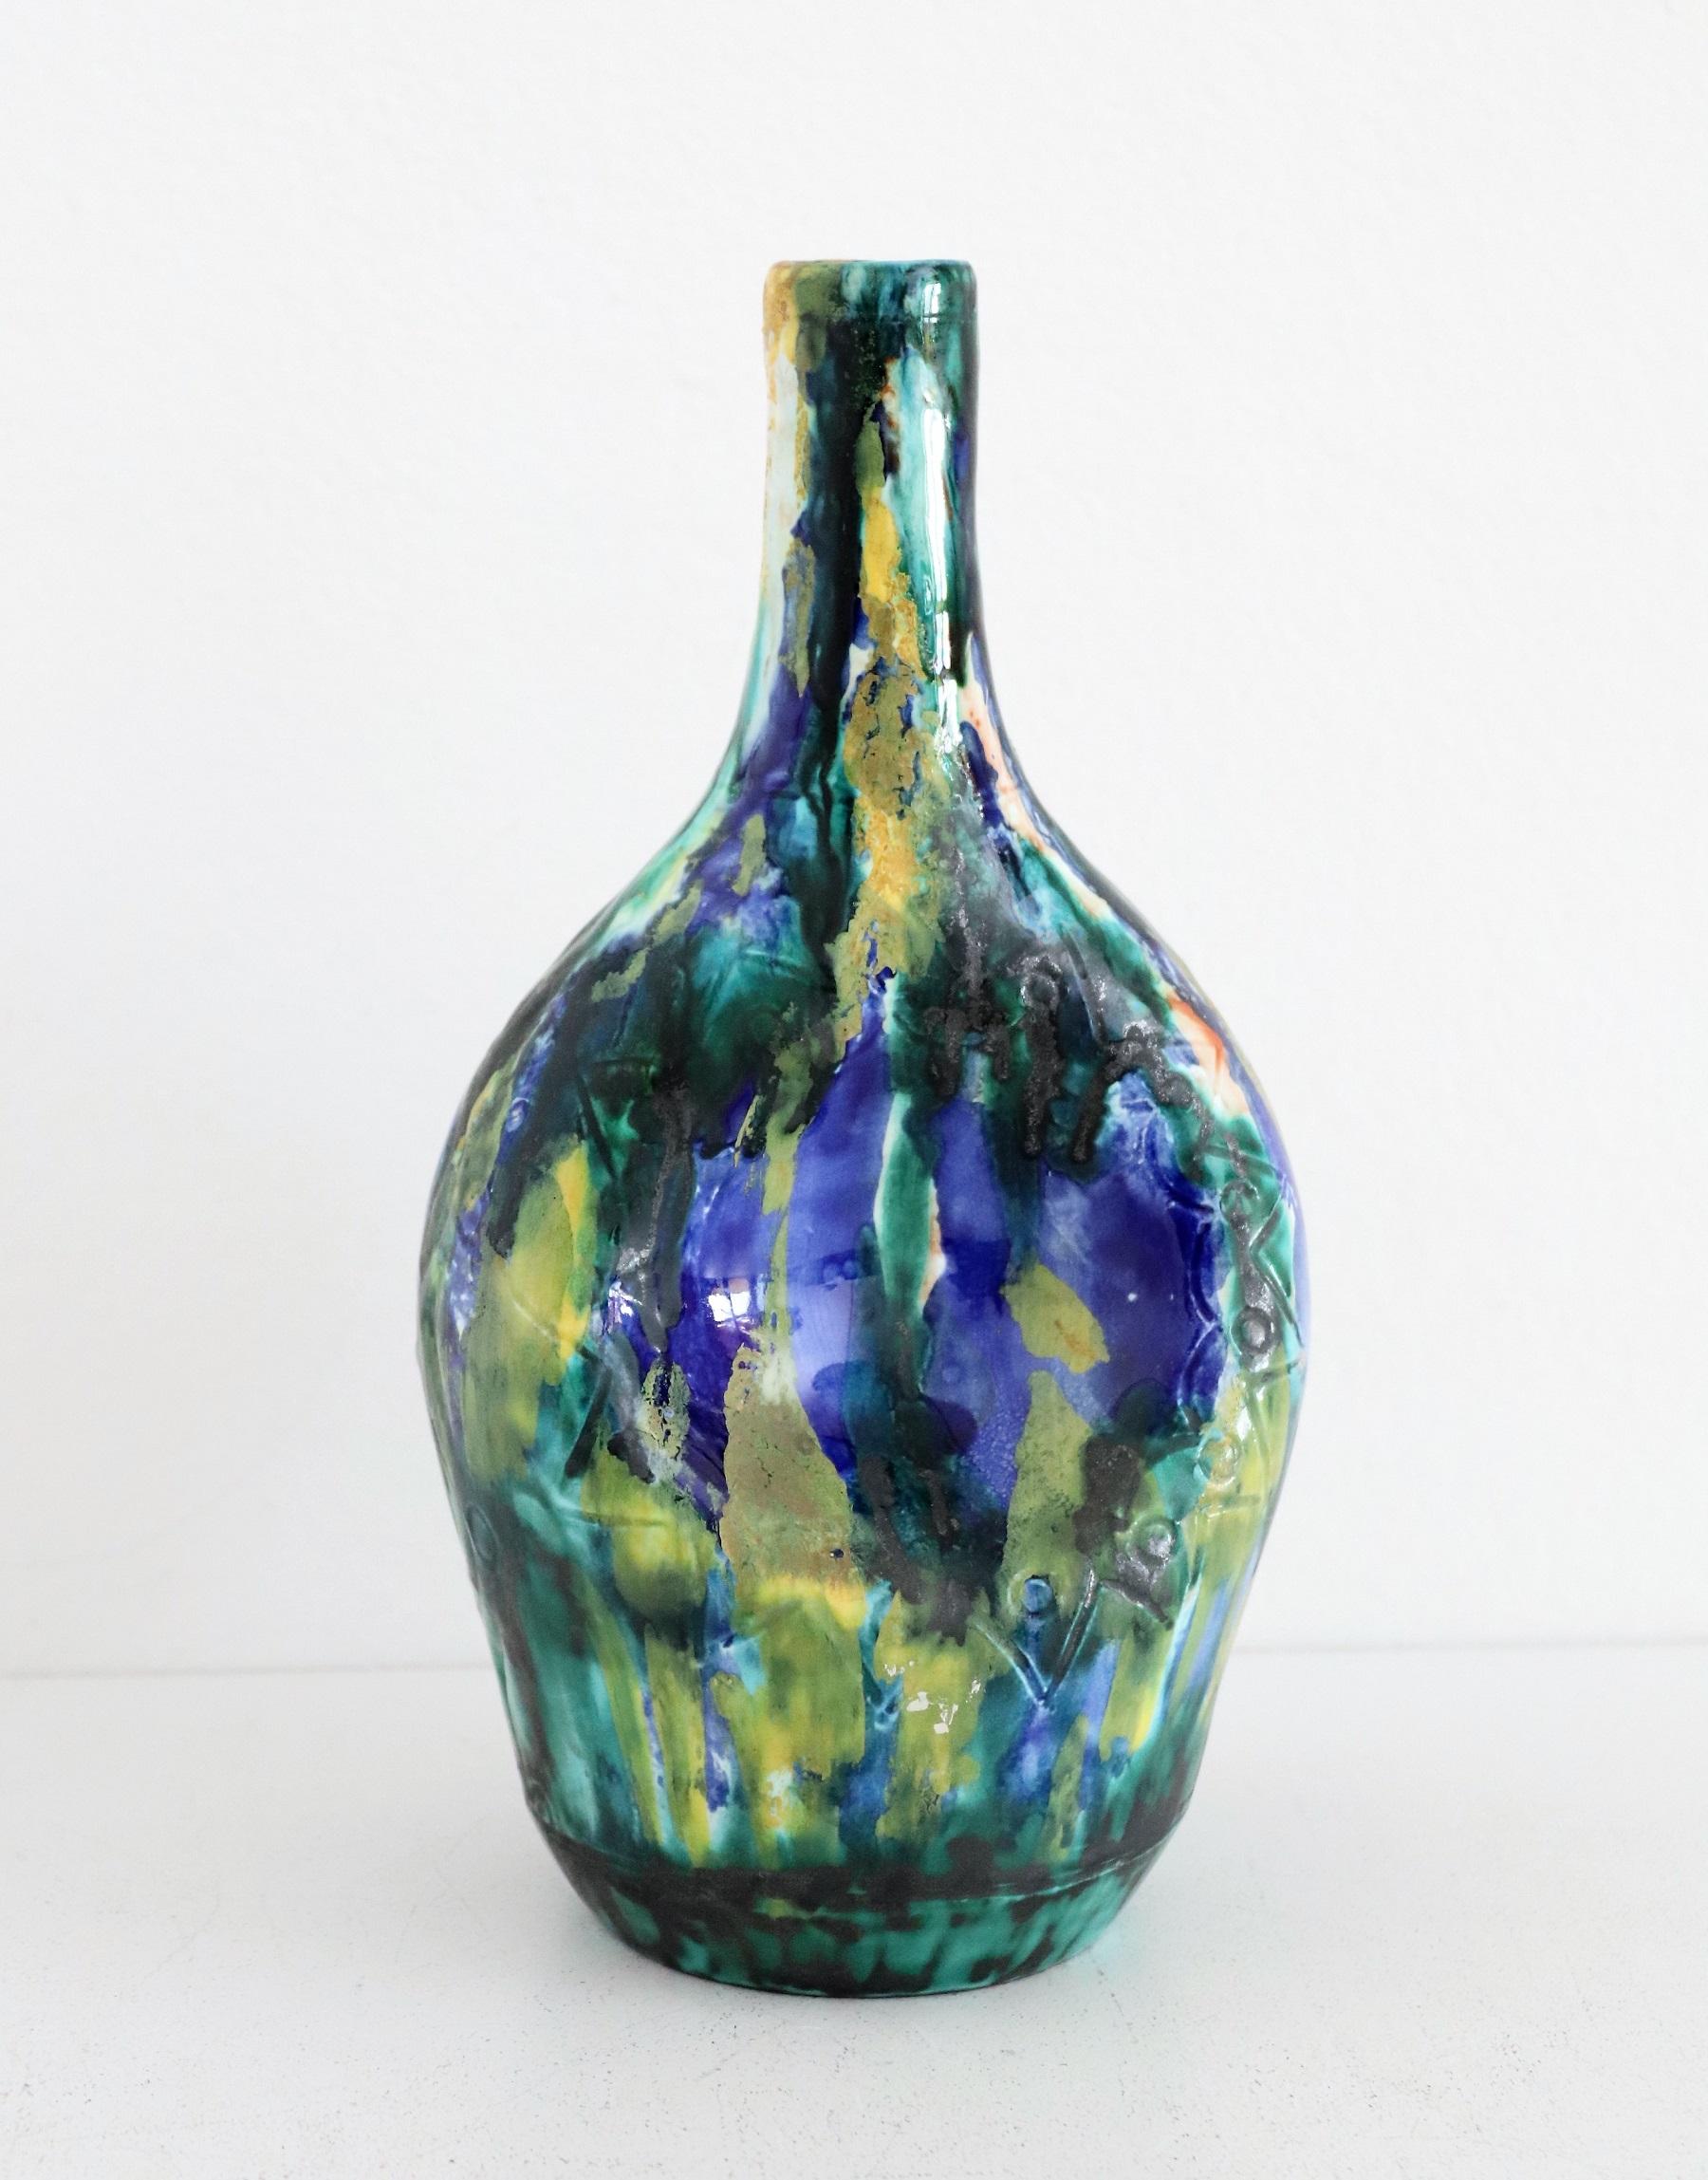 Wunderschöne und seltene Vase aus polychromer Keramik.
Hergestellt in der Töpferwerkstatt von Giuseppe Barile in Albisola, Italien.
Die Manufaktur wurde 1950 gegründet und 1977 geschlossen.
Diese Vase ist in ausgezeichnetem Vintage-Zustand, wir